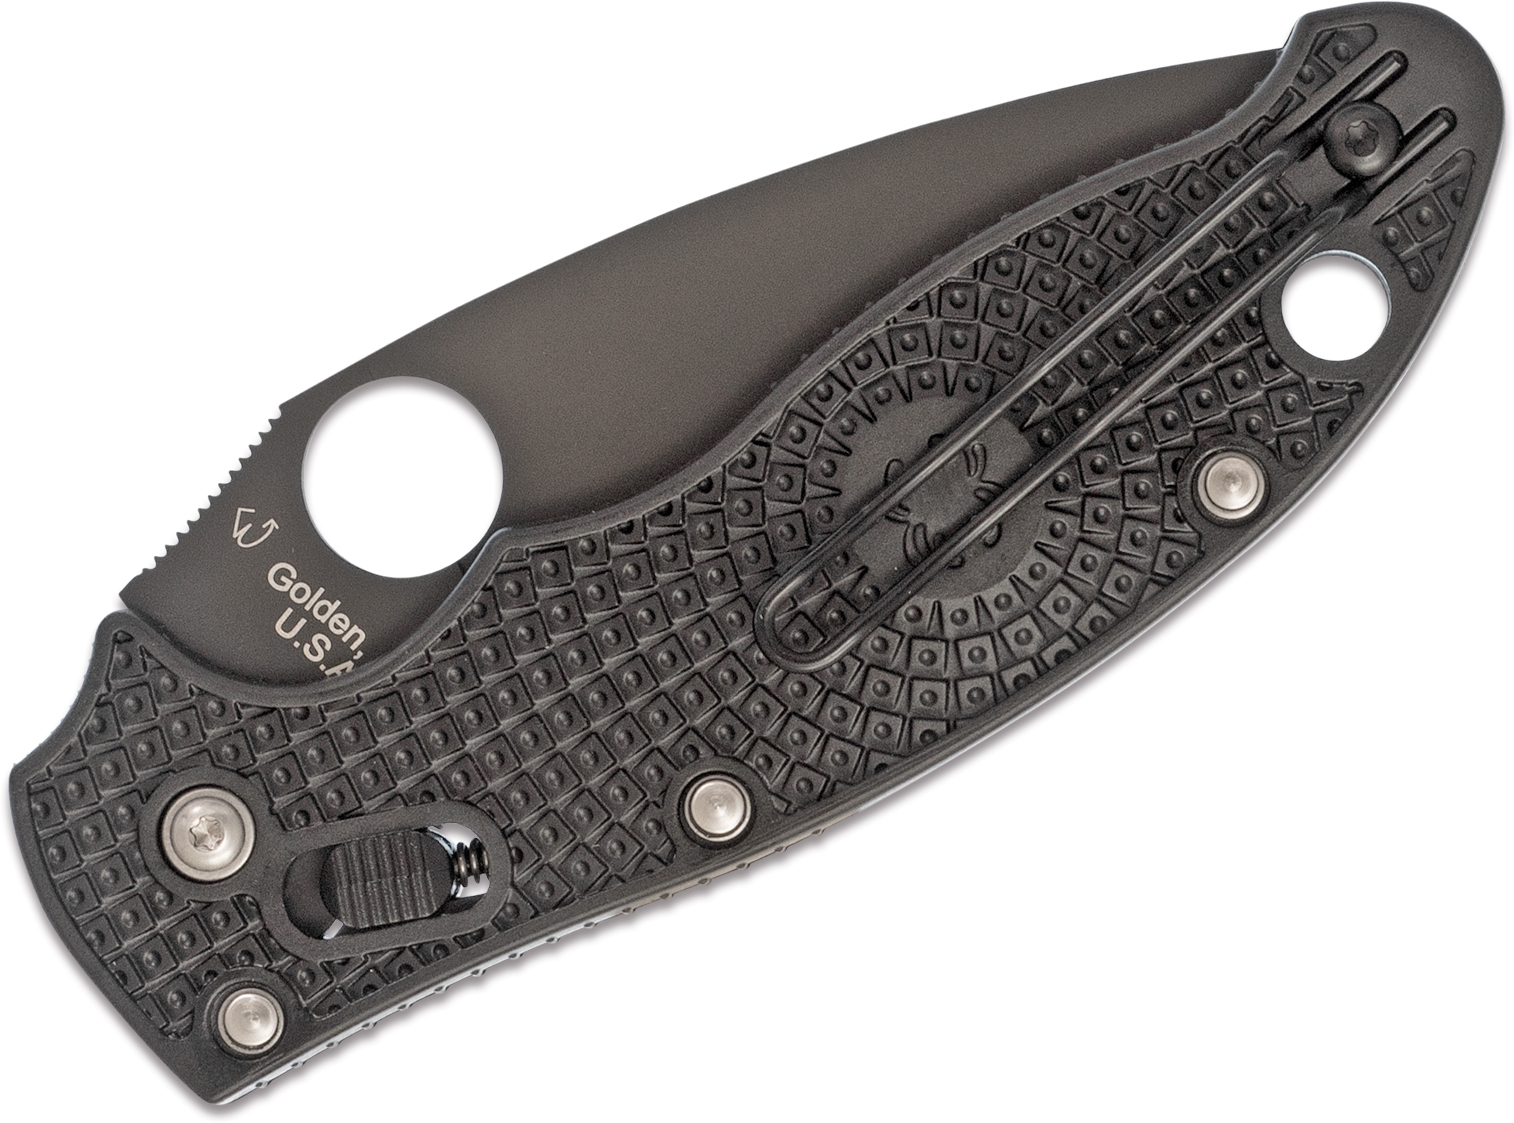 Нож складной Manix 2 Spyderco C101PBBK2, сталь Carpenter CTS™ - BD1 Alloy Black DLC Coated Plain, рукоять пластик FRCP, чёрный - фото 8